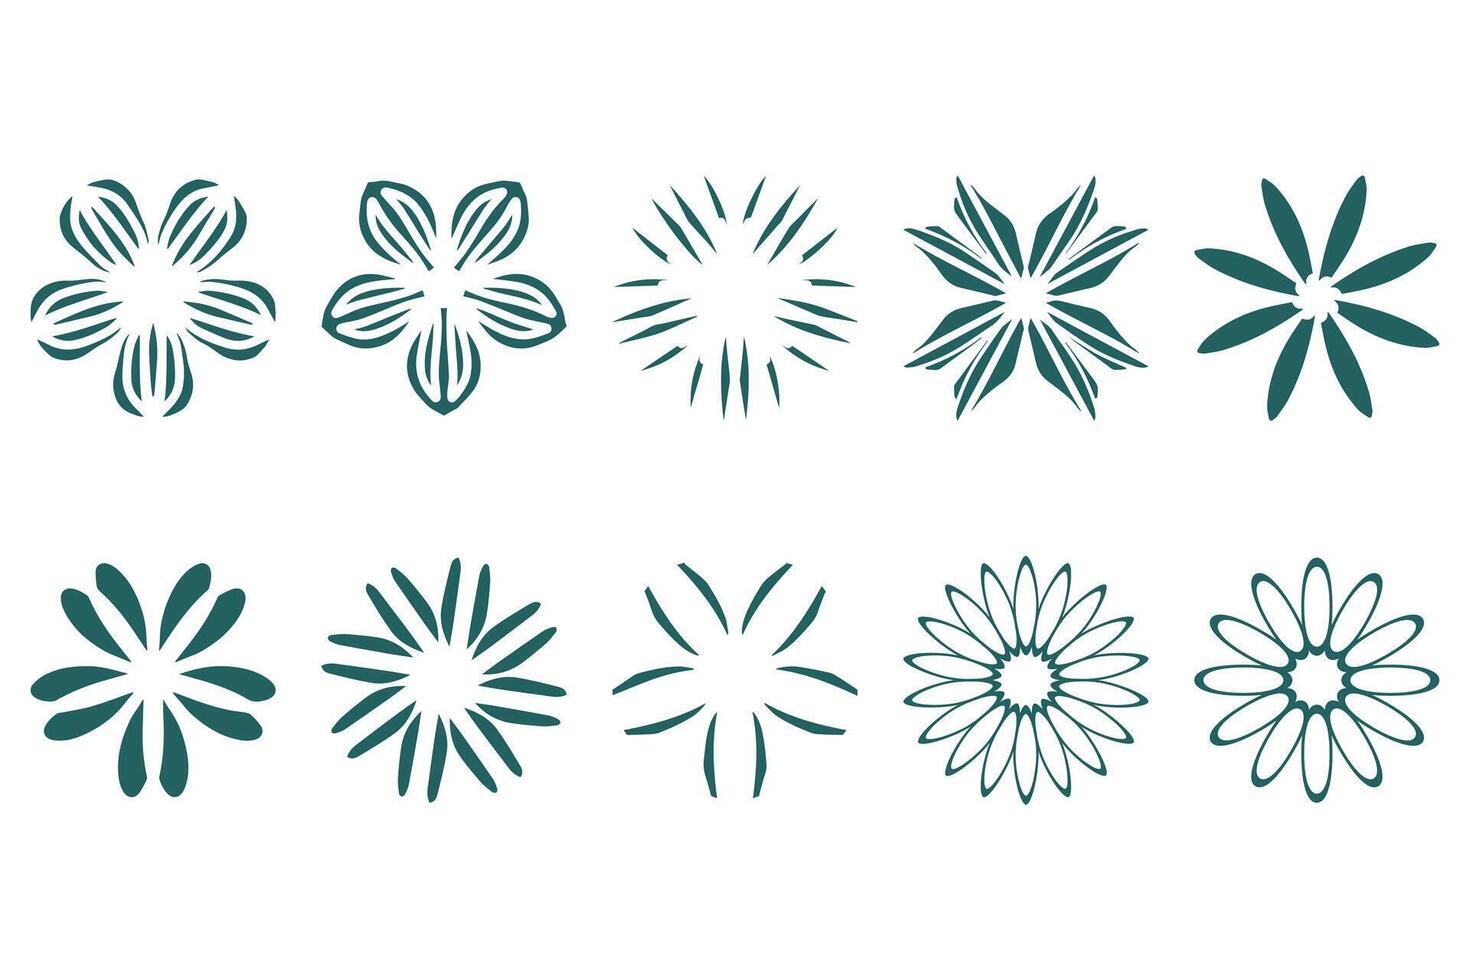 Botanical flower design set. Decorative floral vector